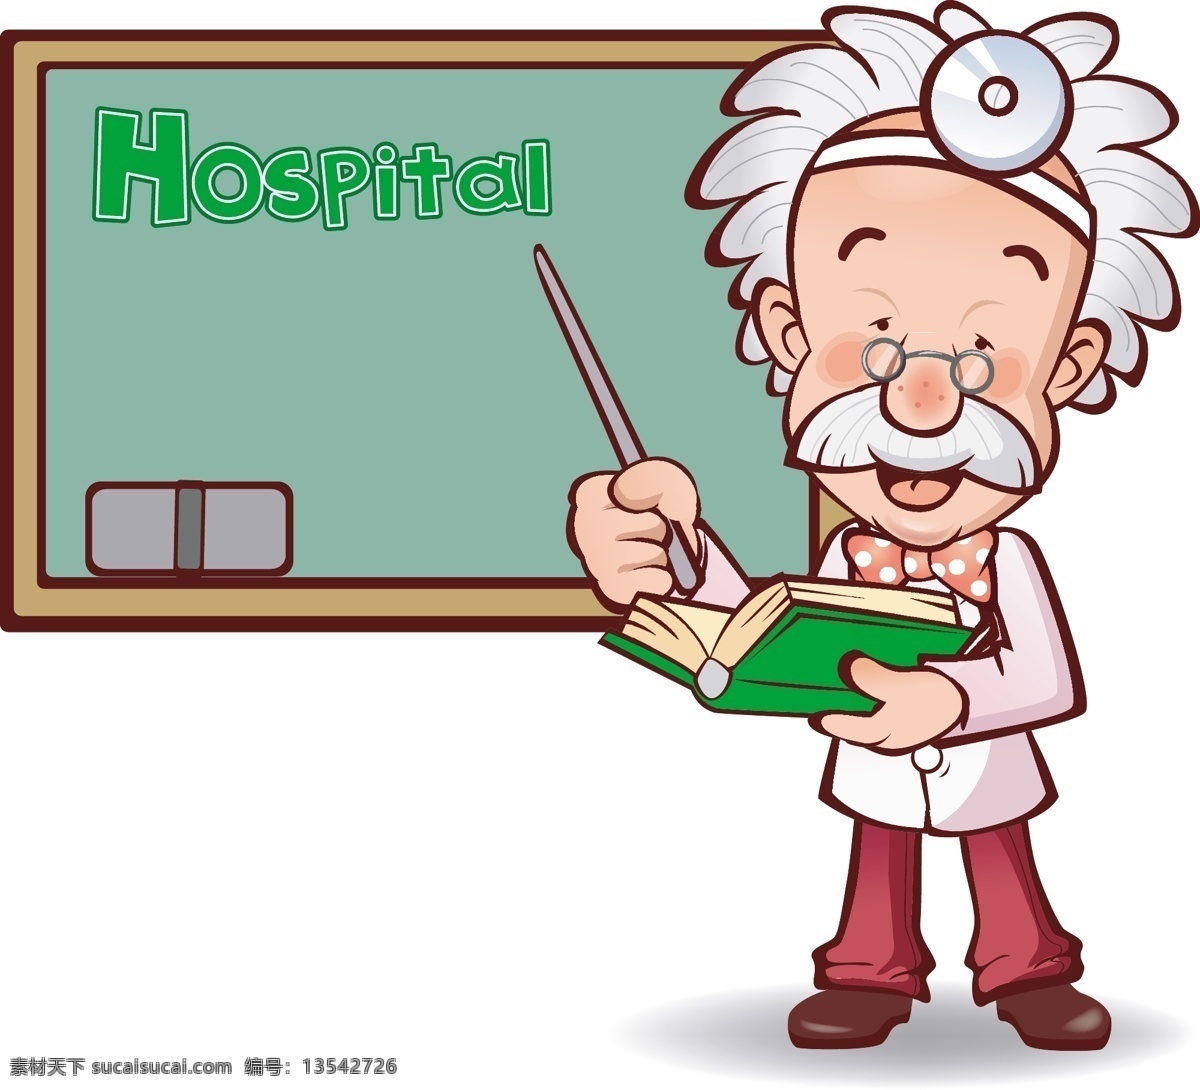 医生 医院 卡通动画 动漫 插画 动漫动画 动漫人物 和谐 卡通 上课 十字标志 医护人员 友善 授课 可爱